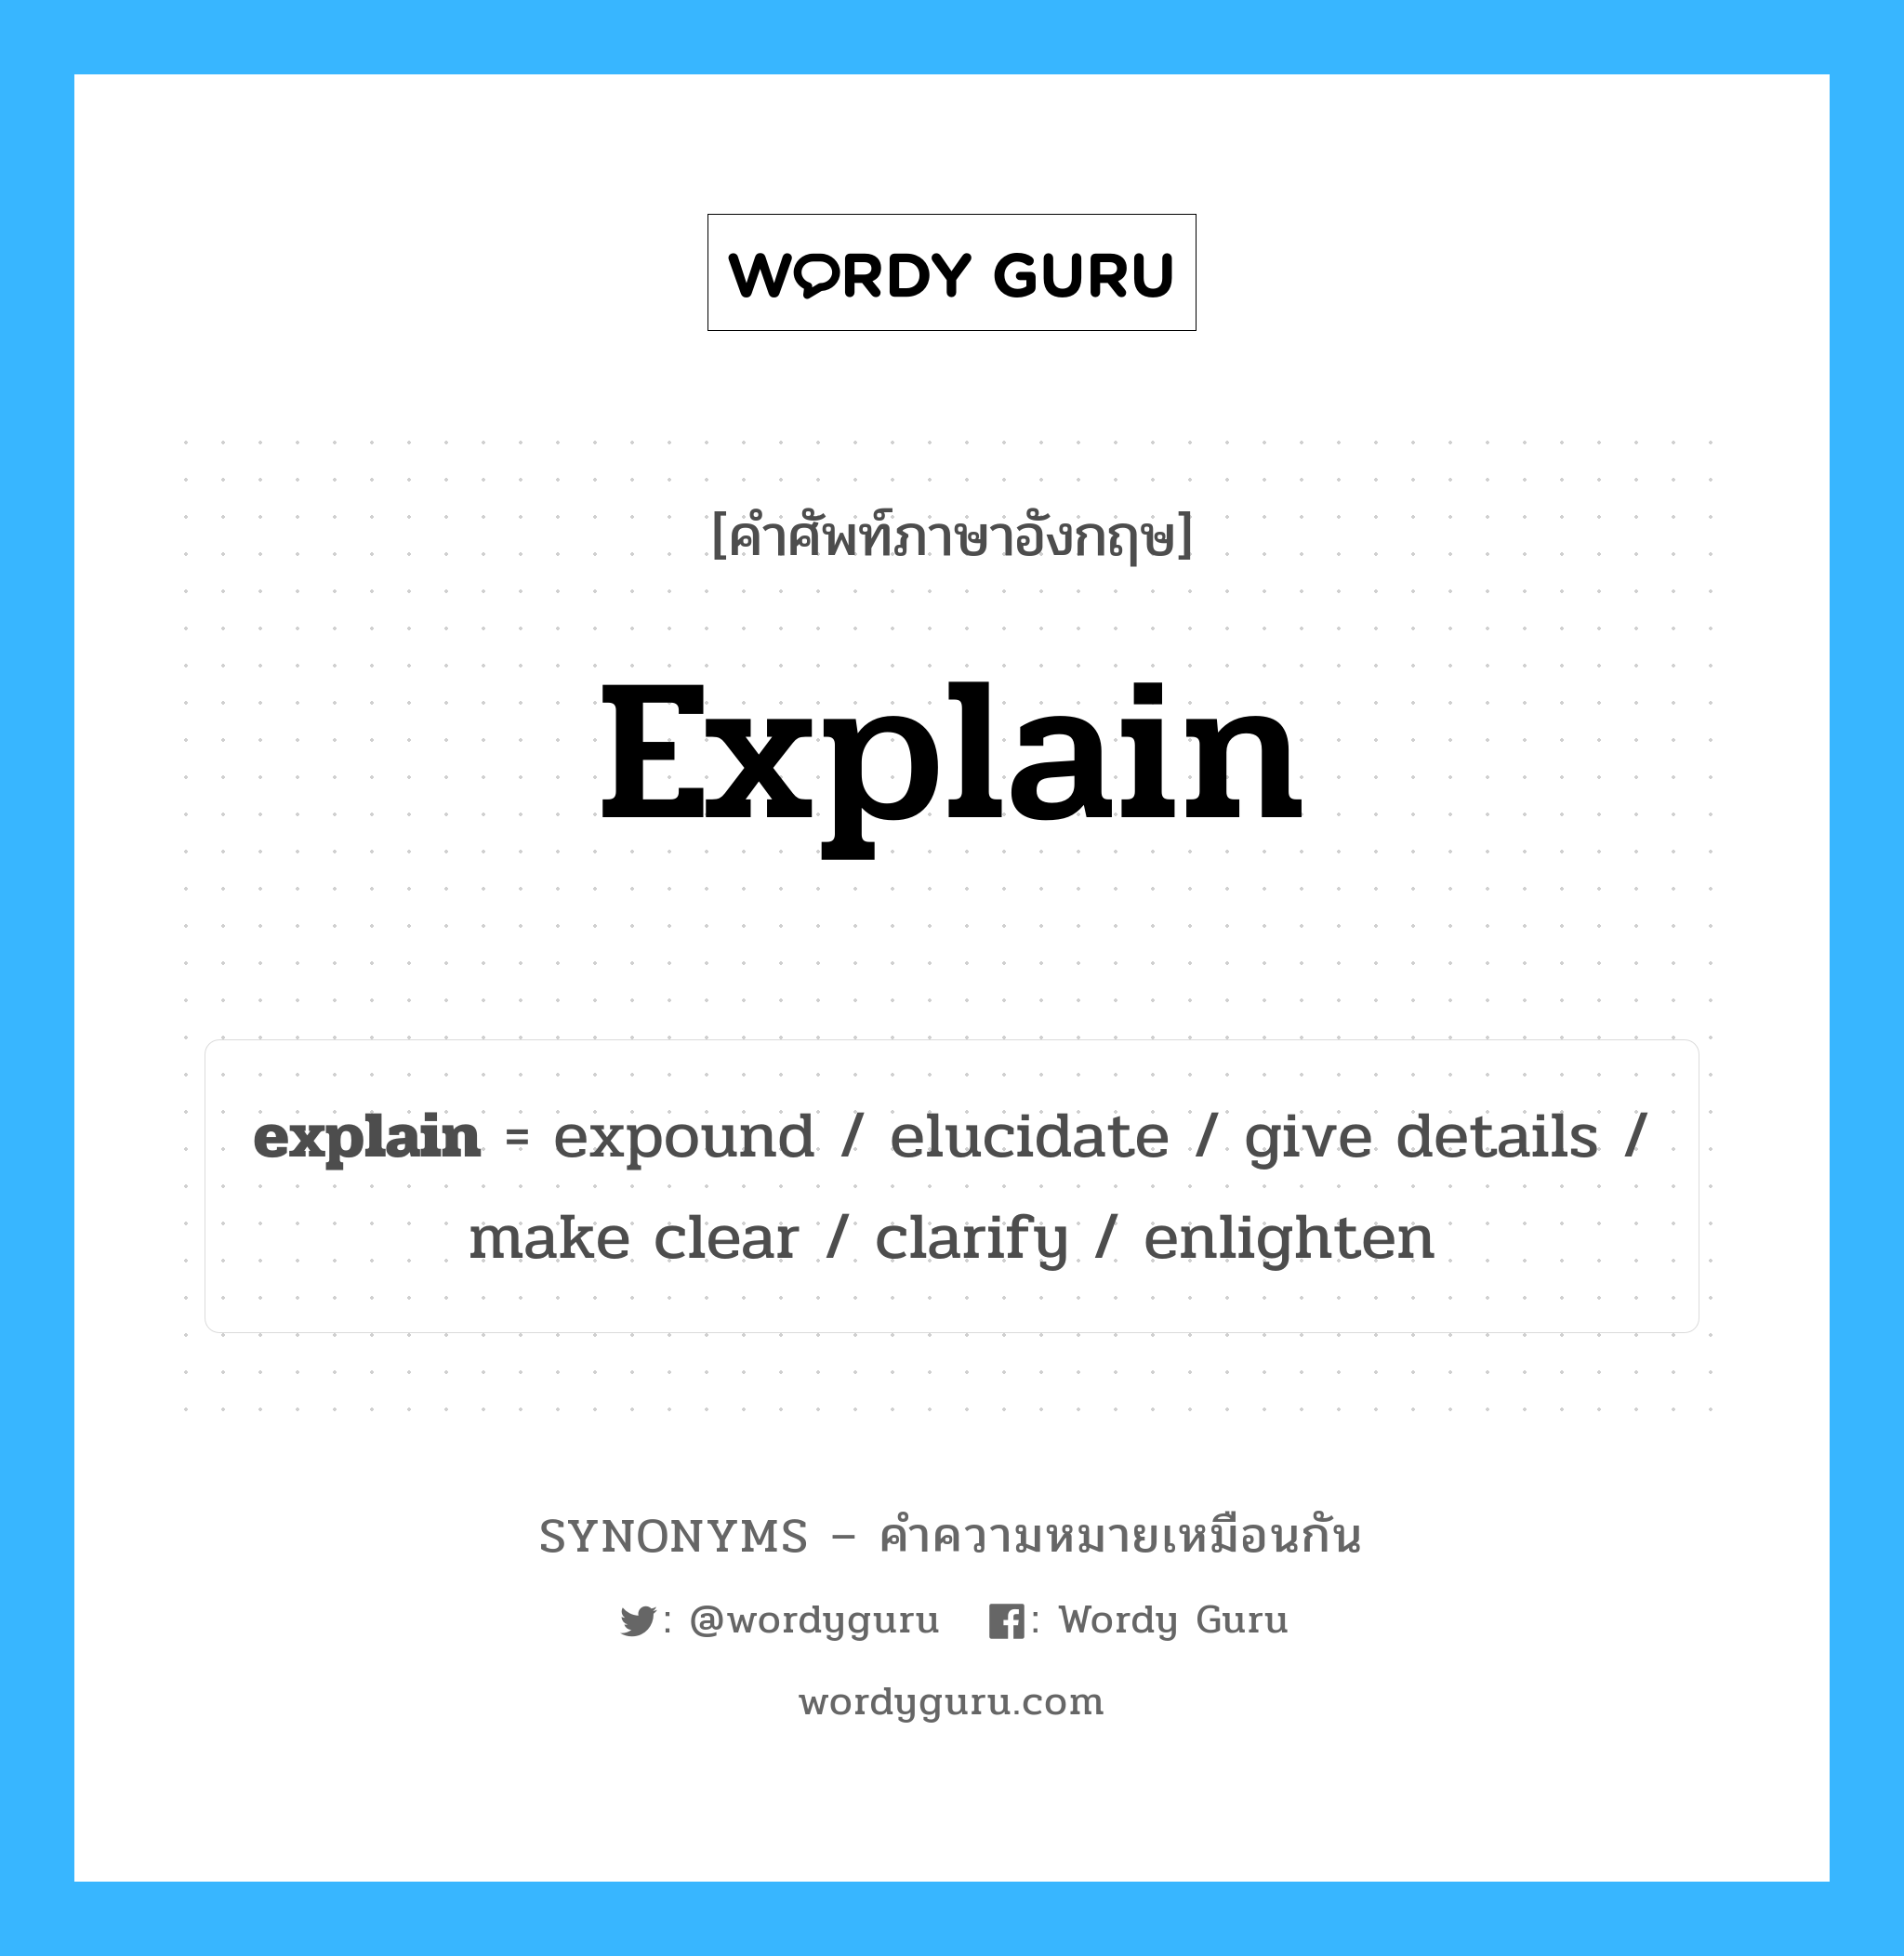 enlighten เป็นหนึ่งใน explain และมีคำอื่น ๆ อีกดังนี้, คำศัพท์ภาษาอังกฤษ enlighten ความหมายคล้ายกันกับ explain แปลว่า สอน หมวด explain